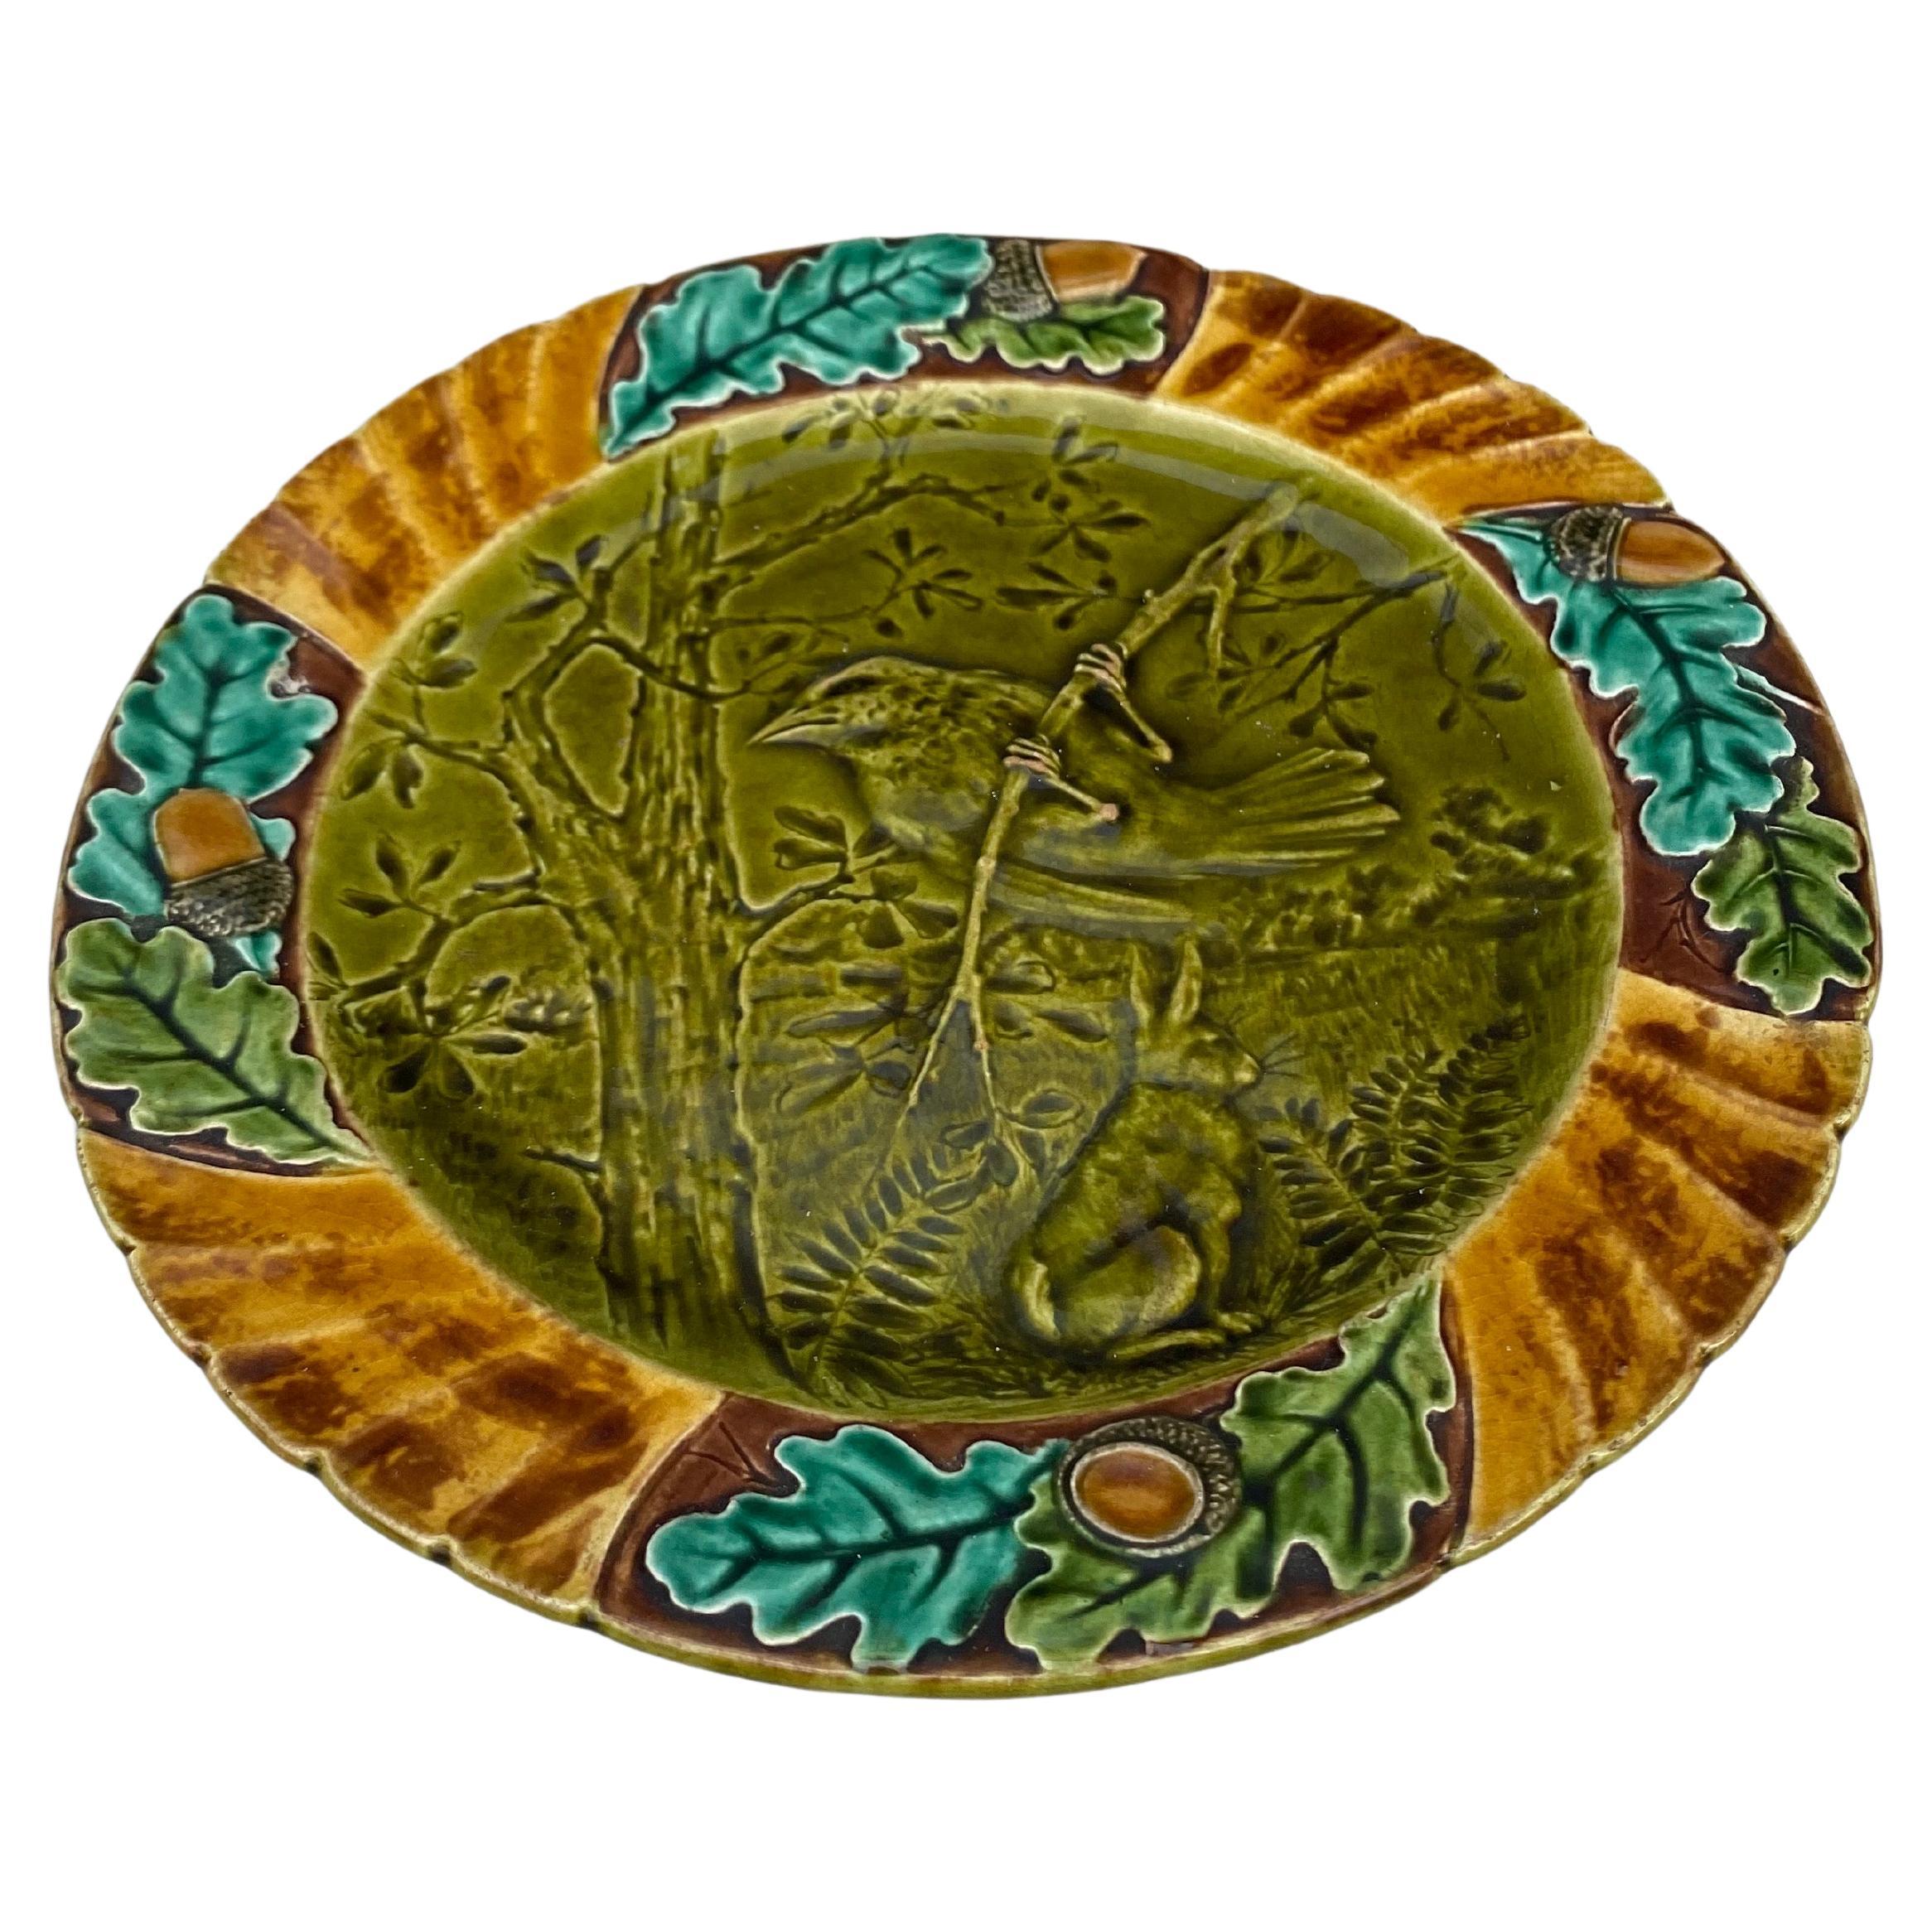 assiette à oiseaux en majolique du XIXe siècle signée Sarreguemines.
Cette assiette représente l'automne avec des feuilles de chêne.